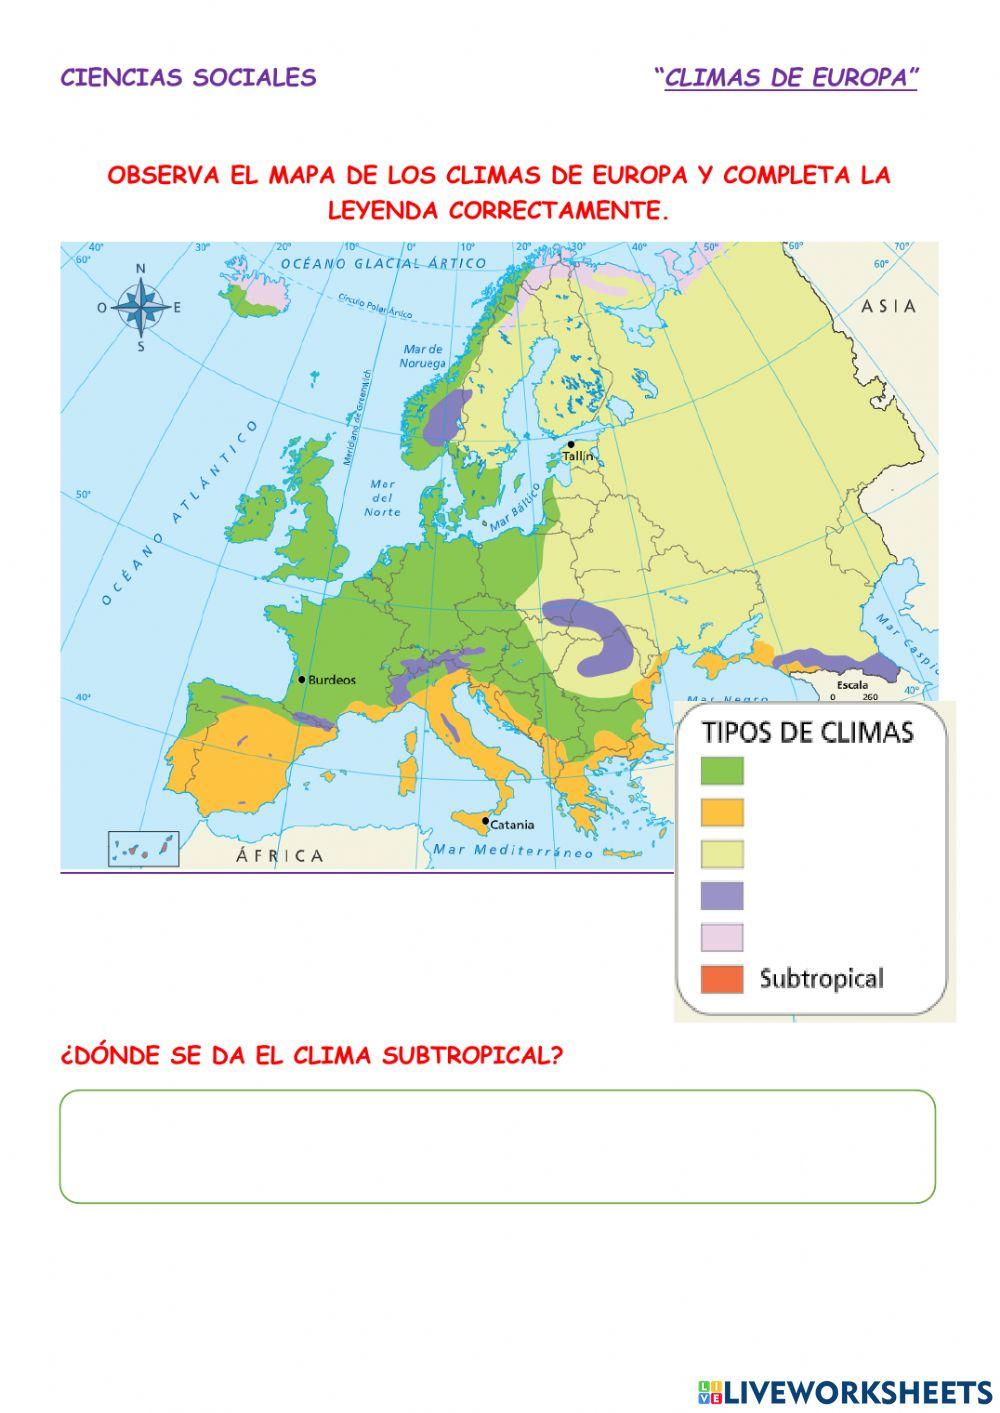 Climas de europa